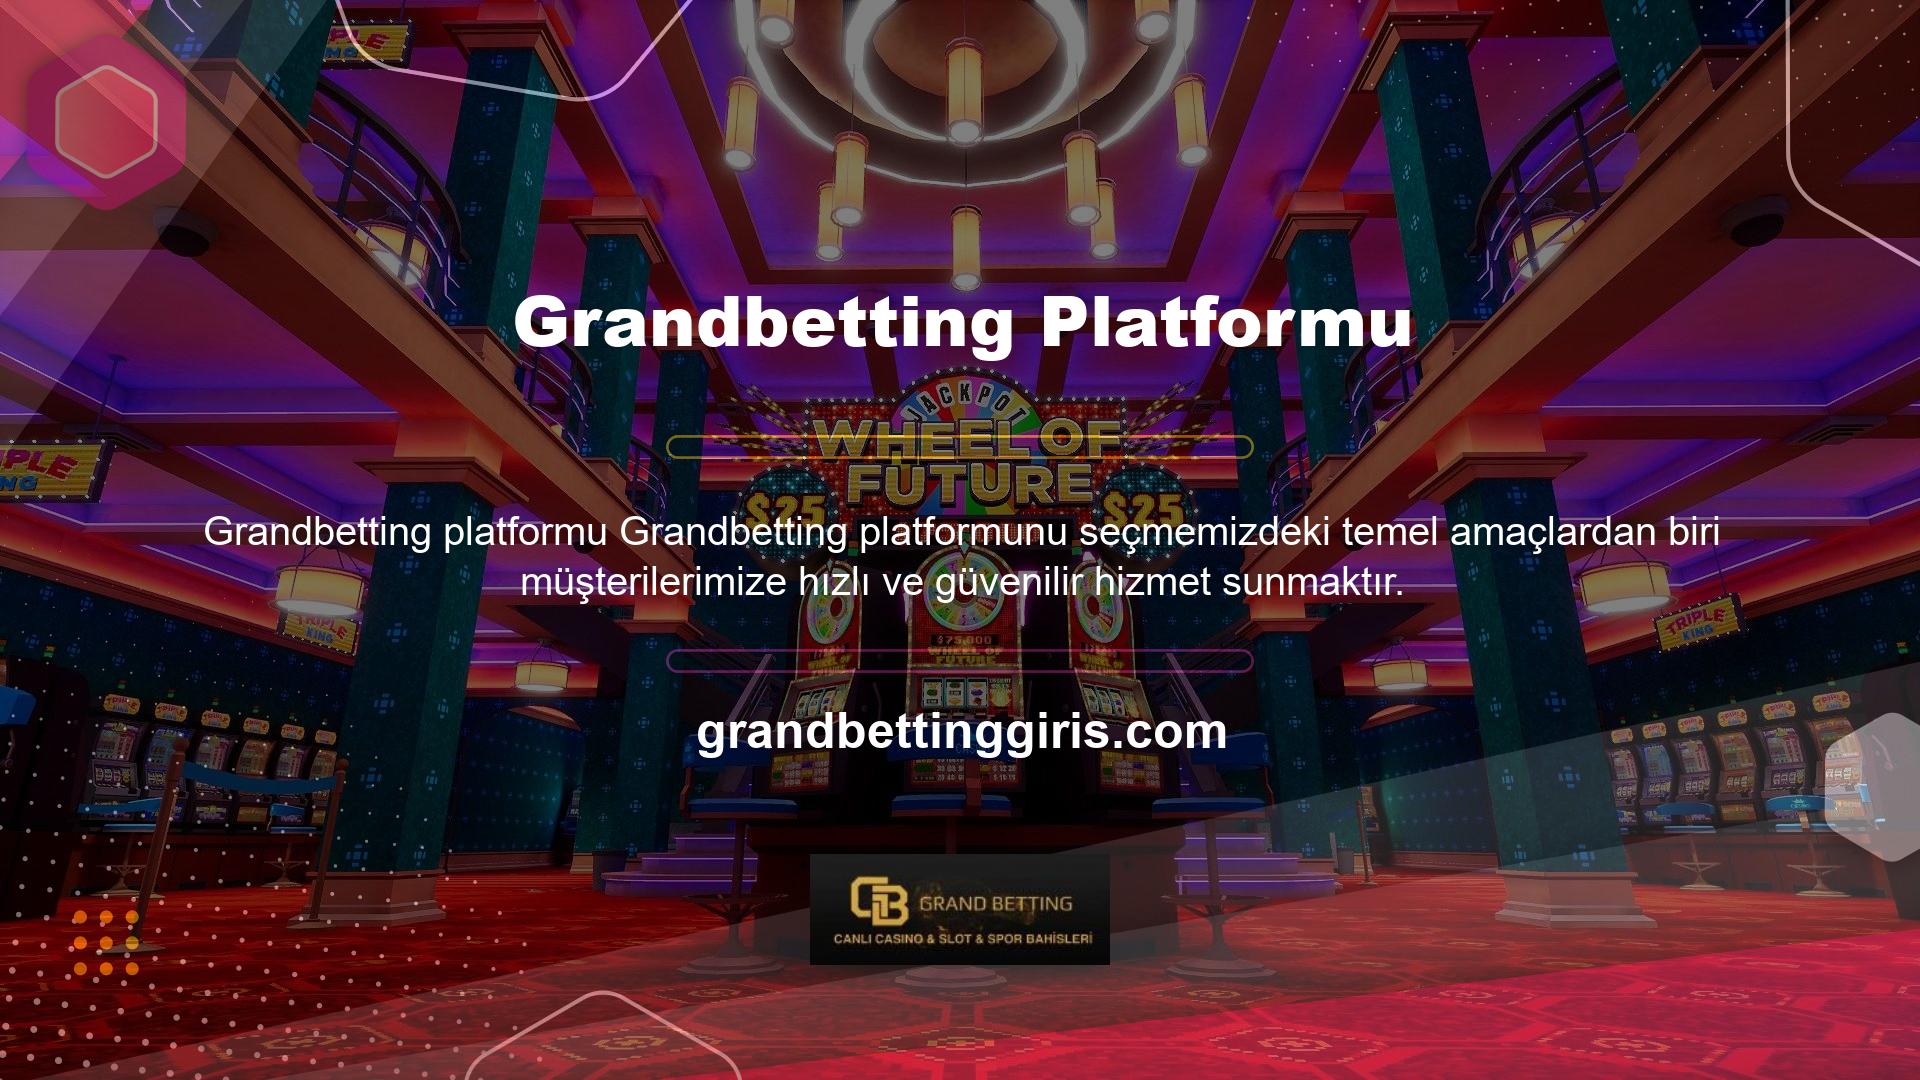 Grandbetting kimlik bilgileri, Türkiye'de ikamet eden ve online casinolarda oynamasına izin verilen oyunculara da hizmet veren bir adresten alınmaktadır